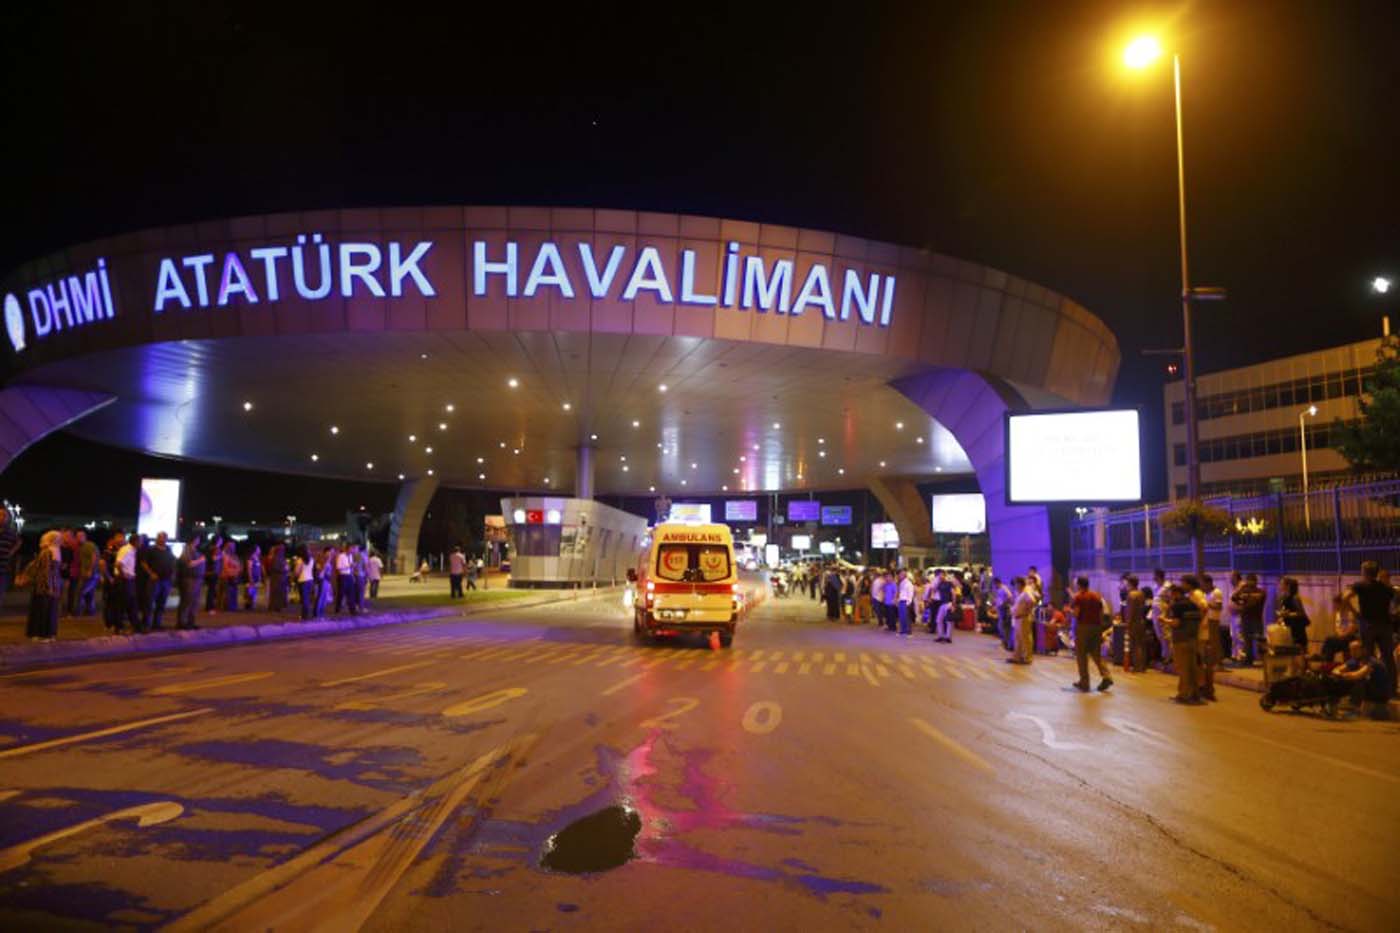 EEUU dice que no hay estadounidenses entre las víctimas del ataque en Turquía